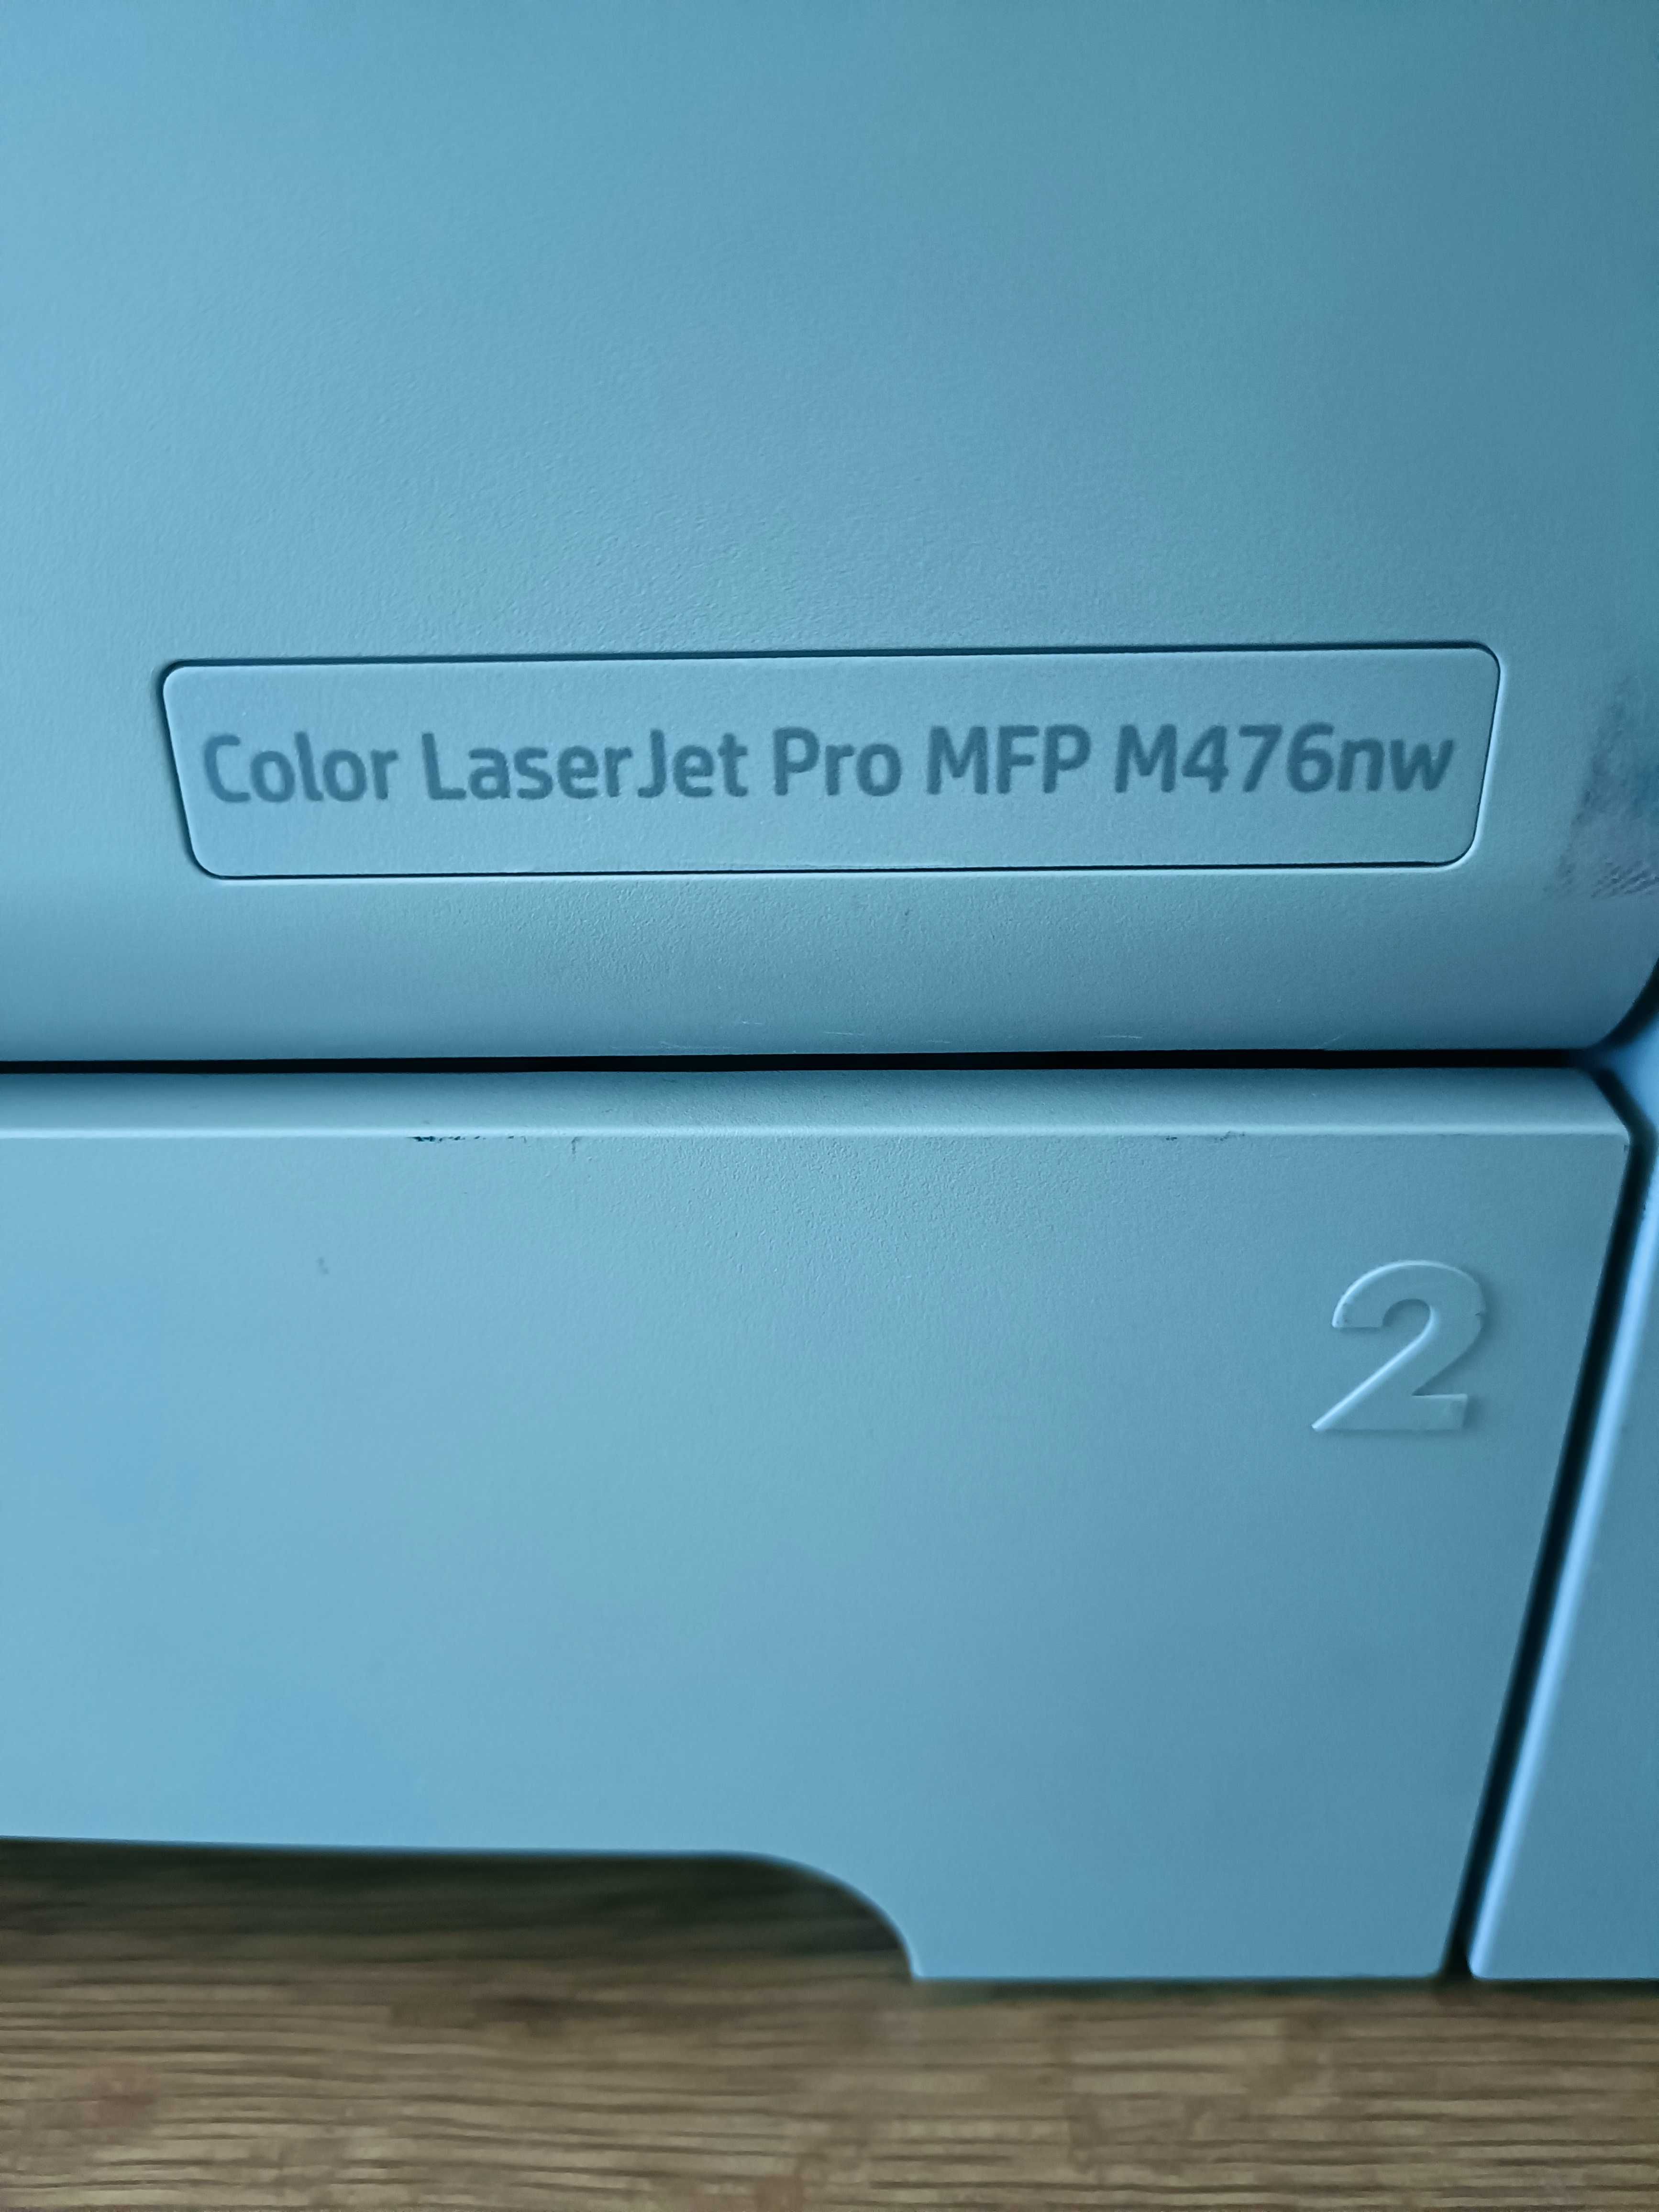 Impressora HP Color Laser Jet Pro MFP M476nw